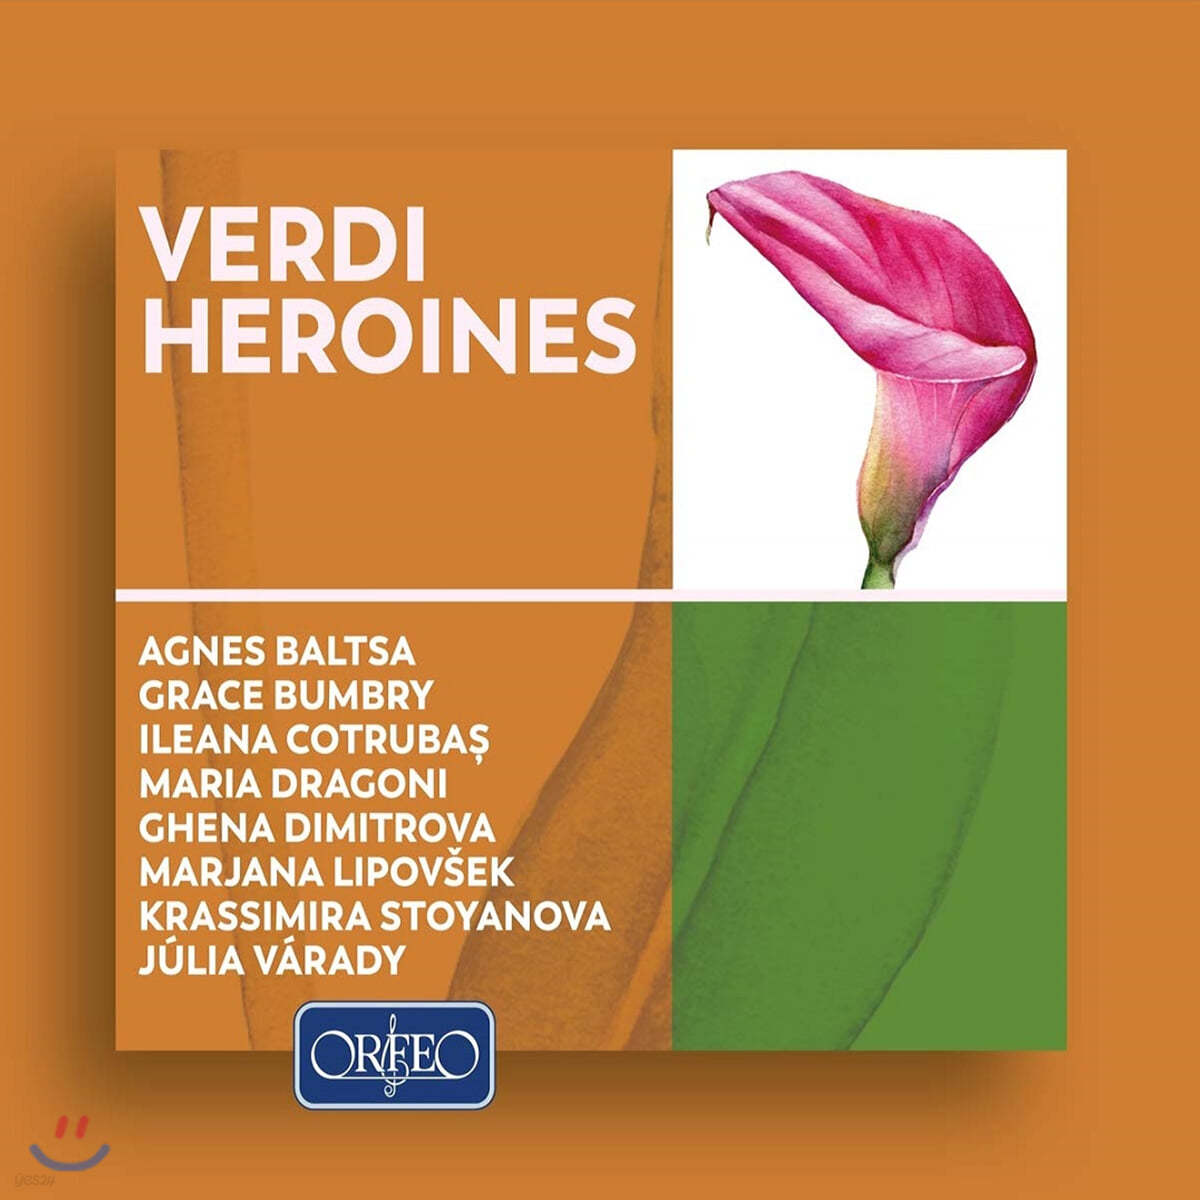 베르디 오페라의 여주인공들 (Verdi Heroines)